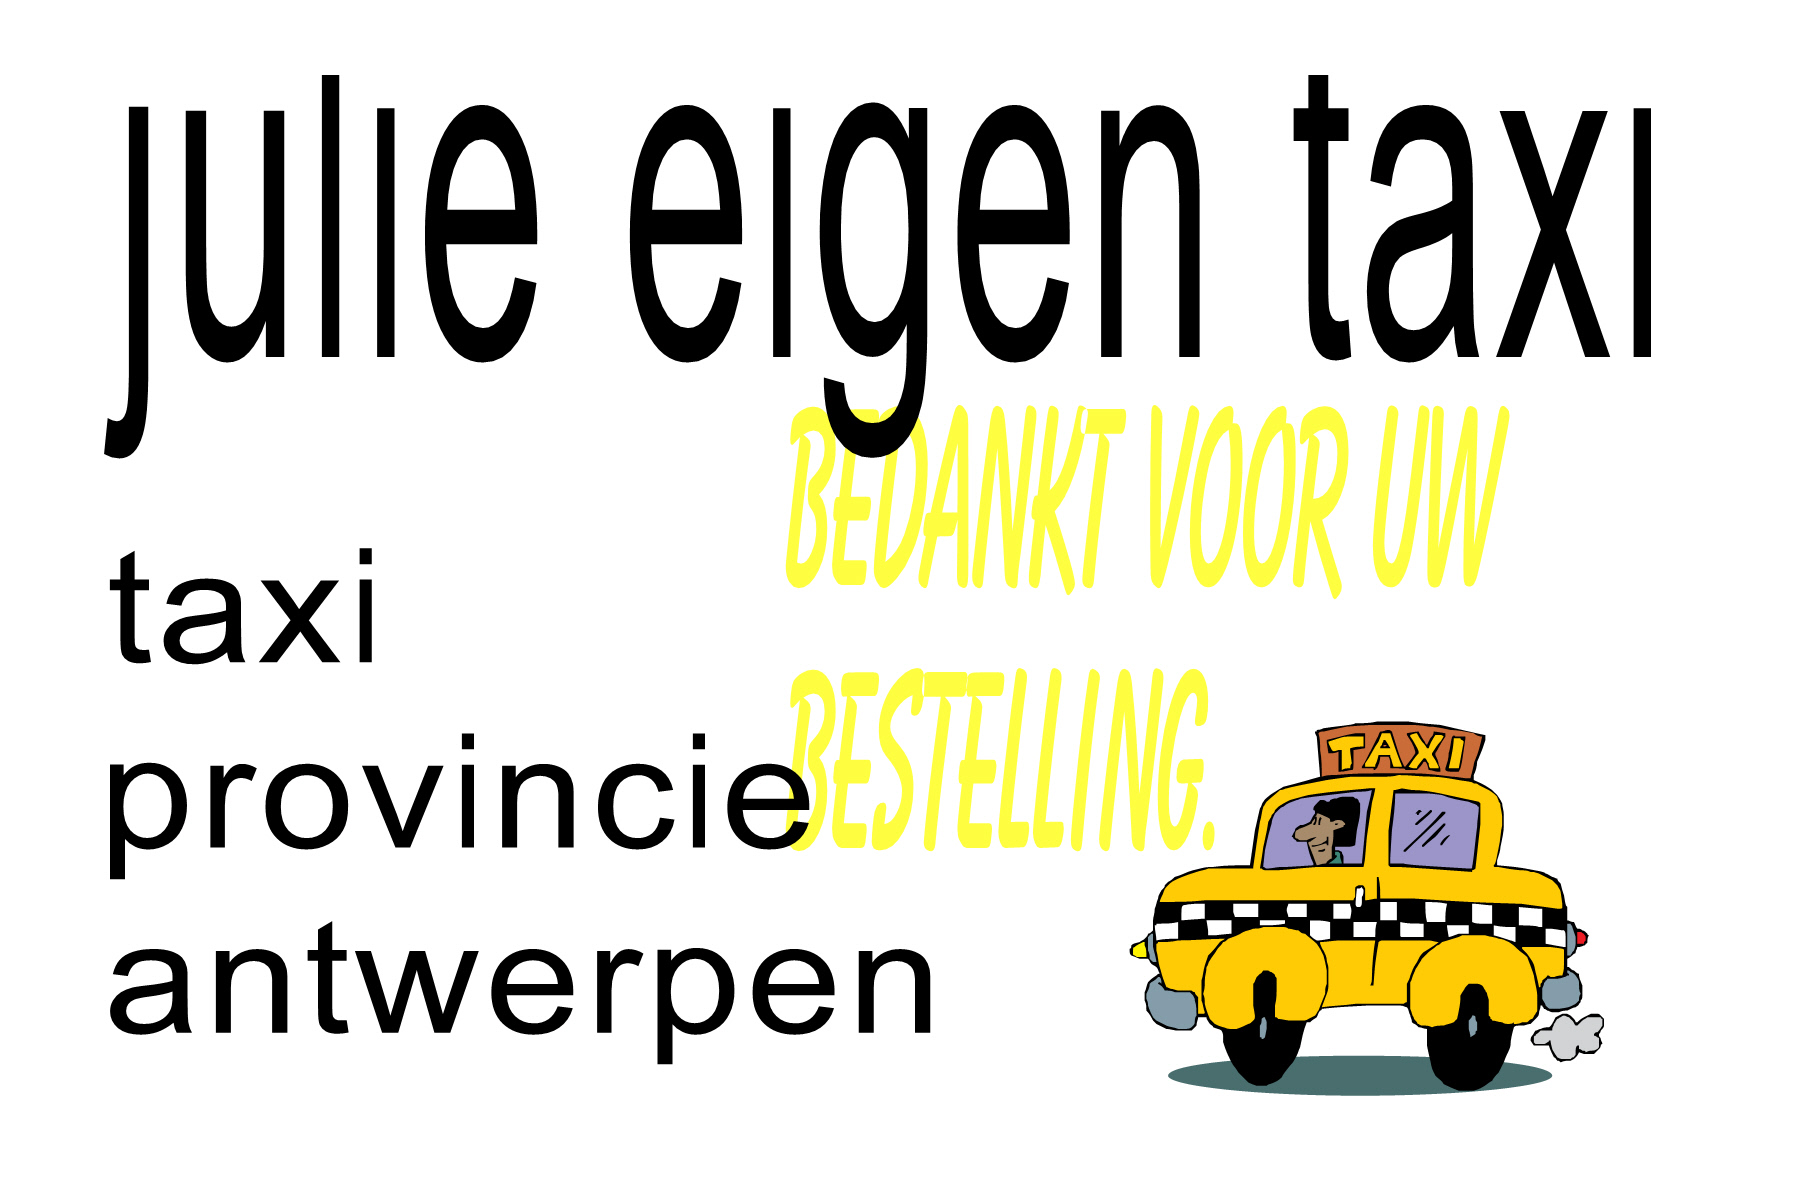 taxibedrijven met luchthavenvervoer Antwerpen | taxi in provincie antwerpen